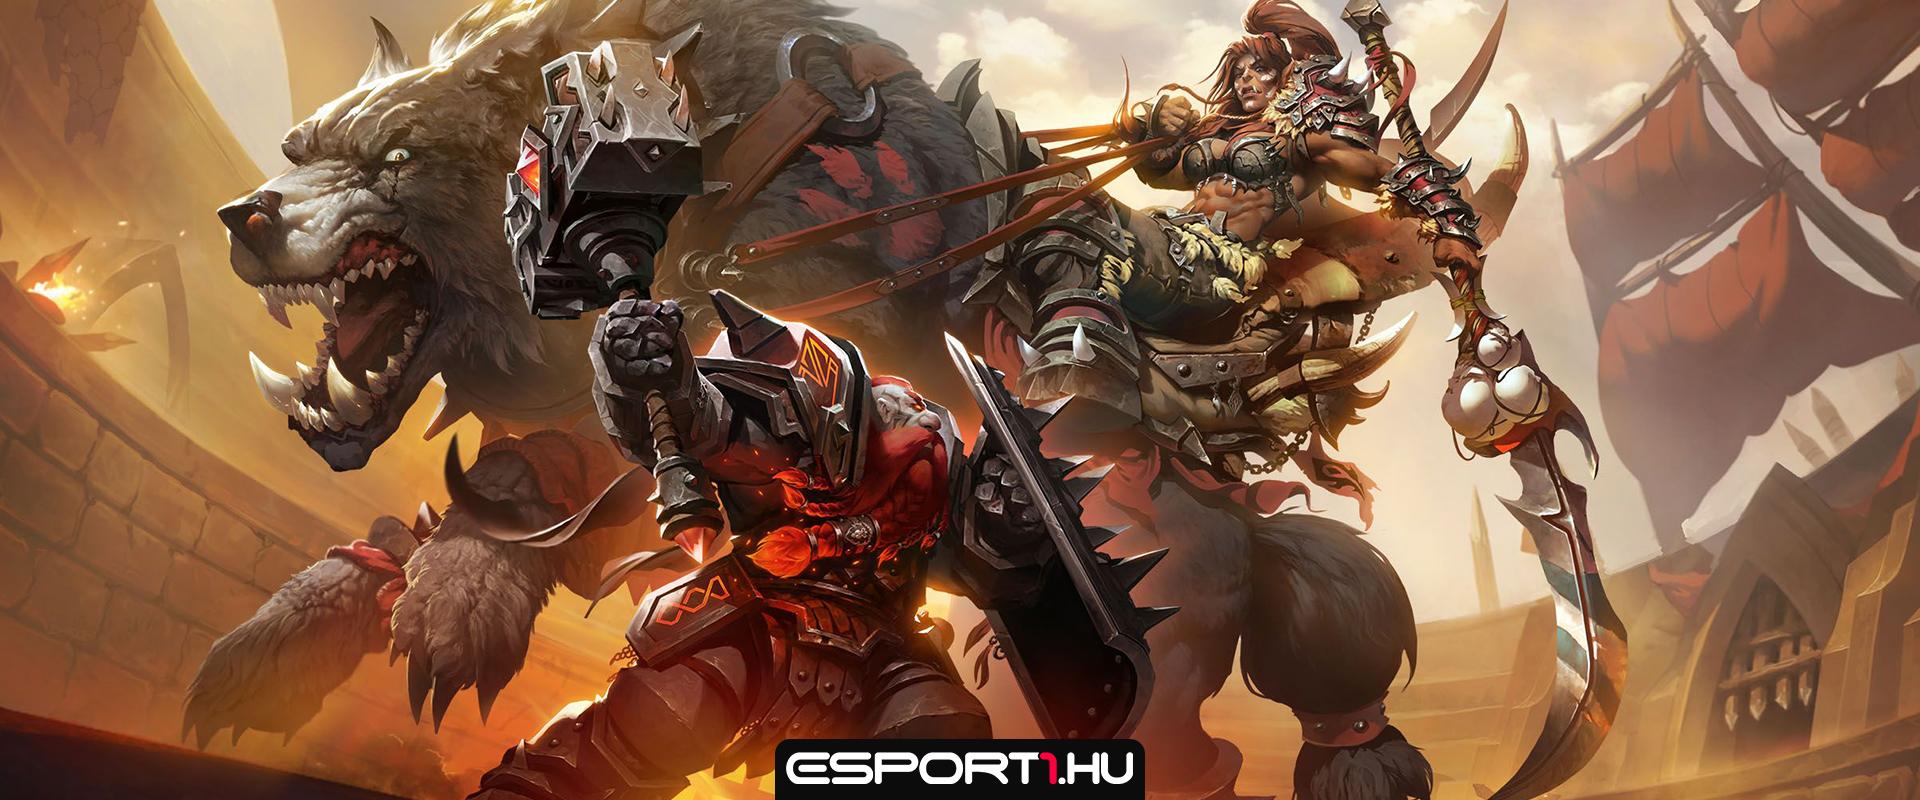 World of Warcraft: 30 milliót sem sajnált már a játékra egy e-sport csapat